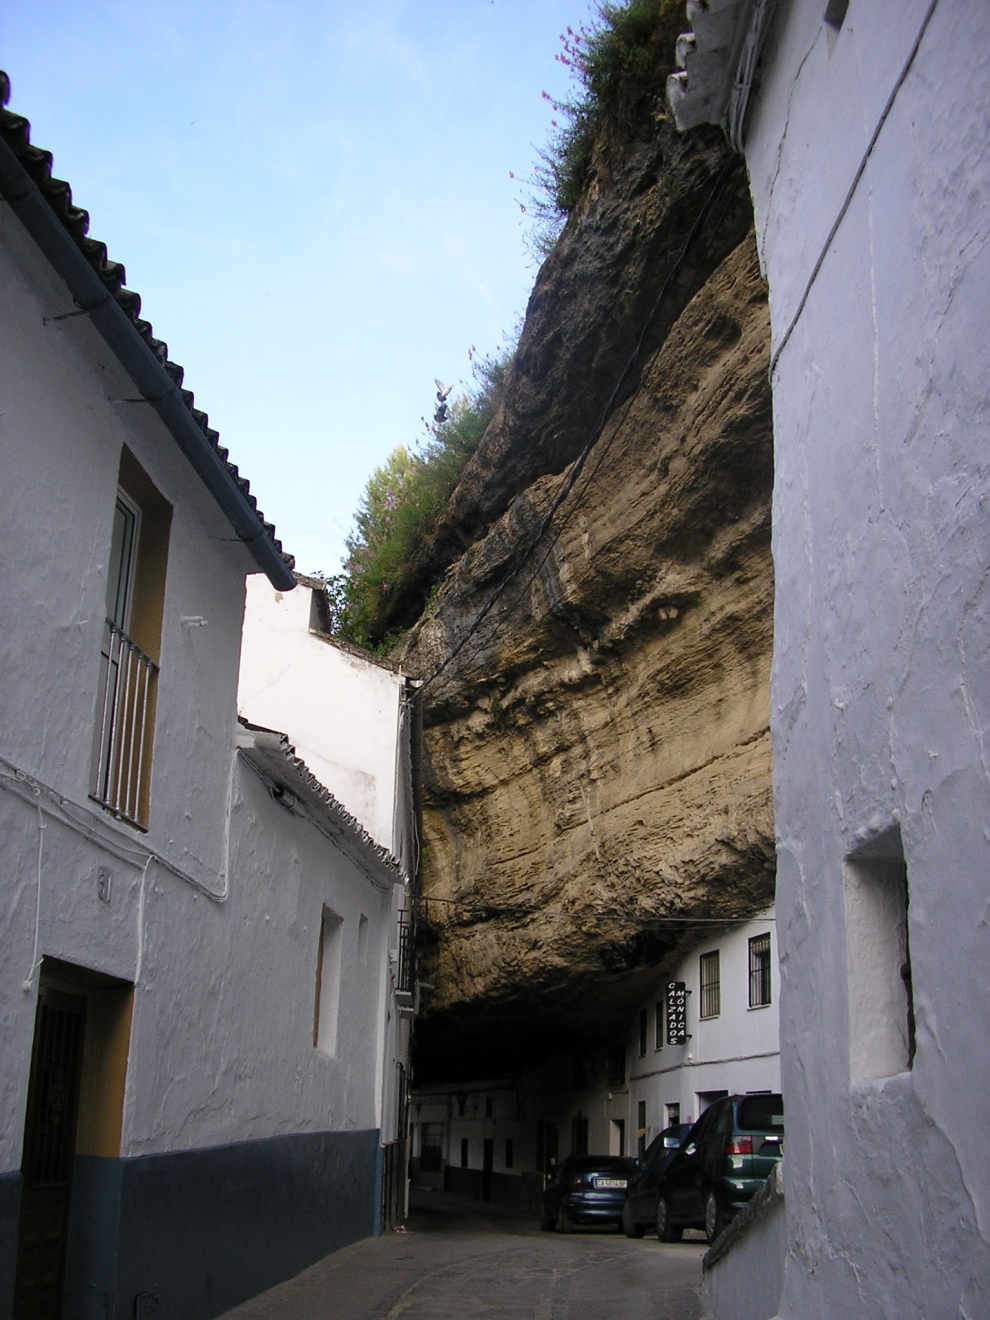 Setenil de las Bodegas - miasto między skałami